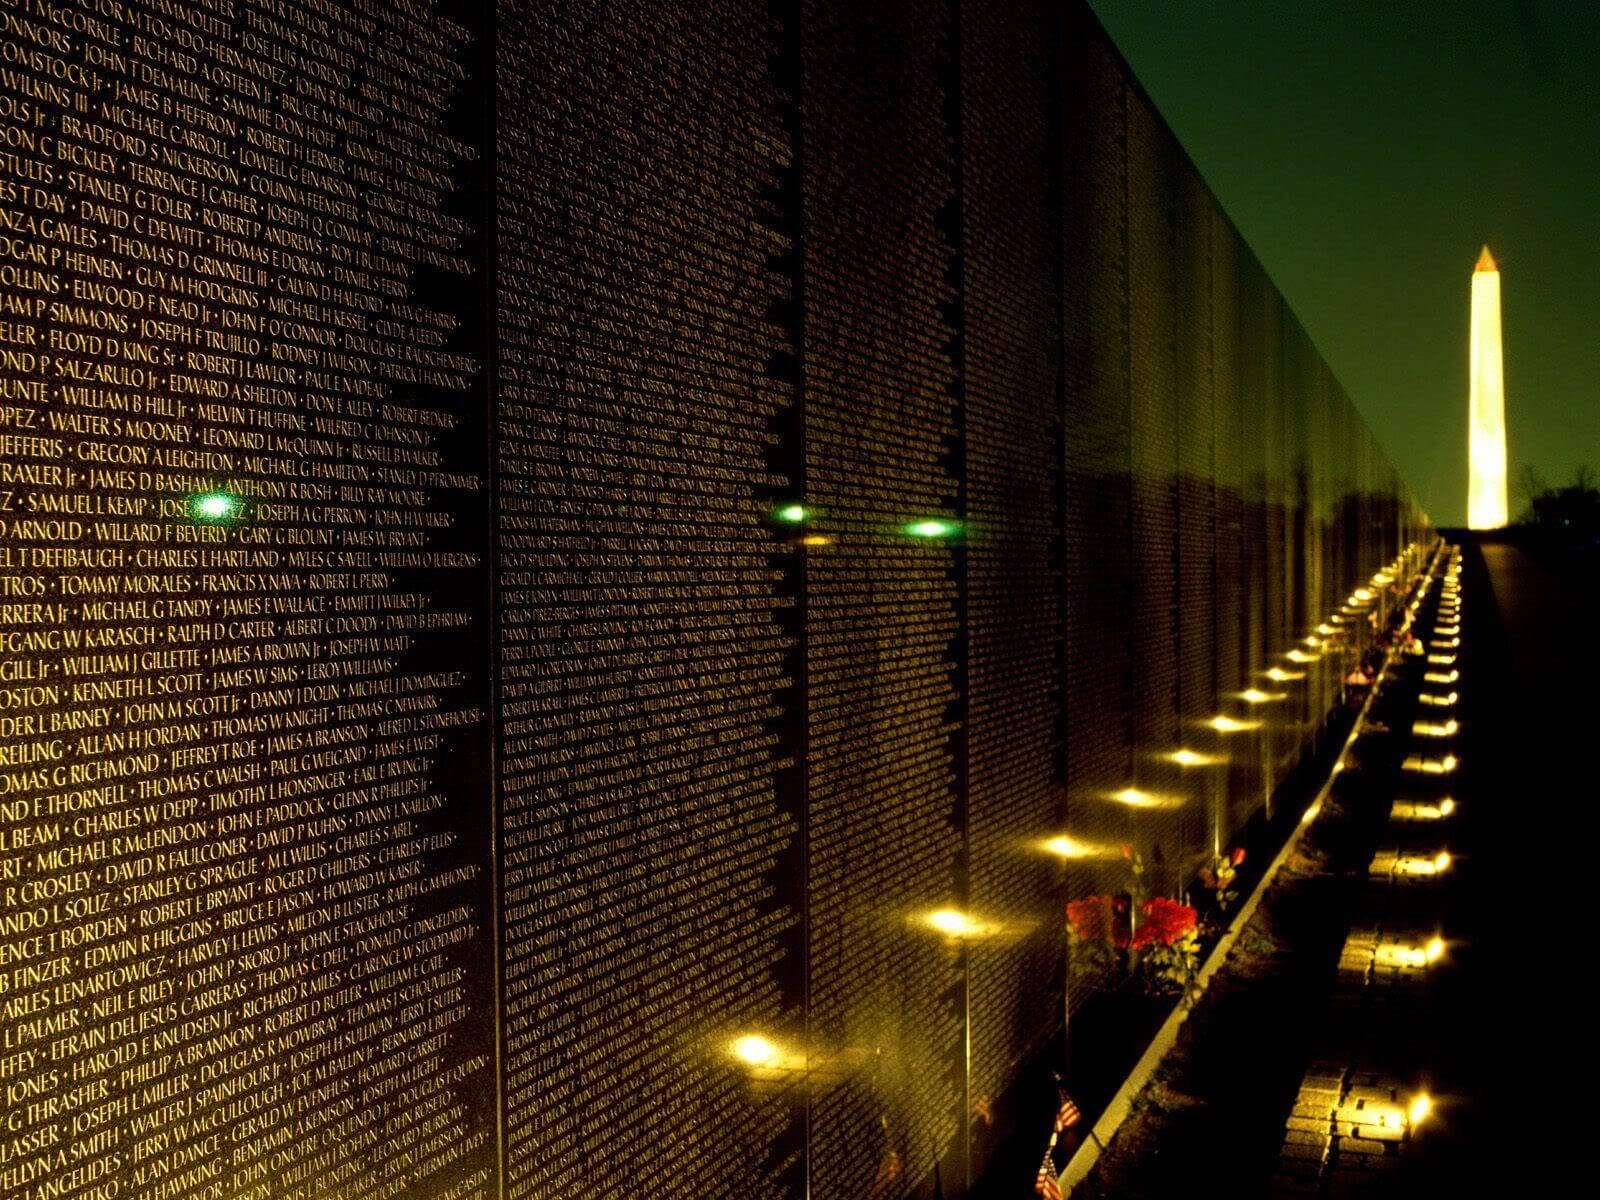 Vietnam Veterans Memorial Day At Night